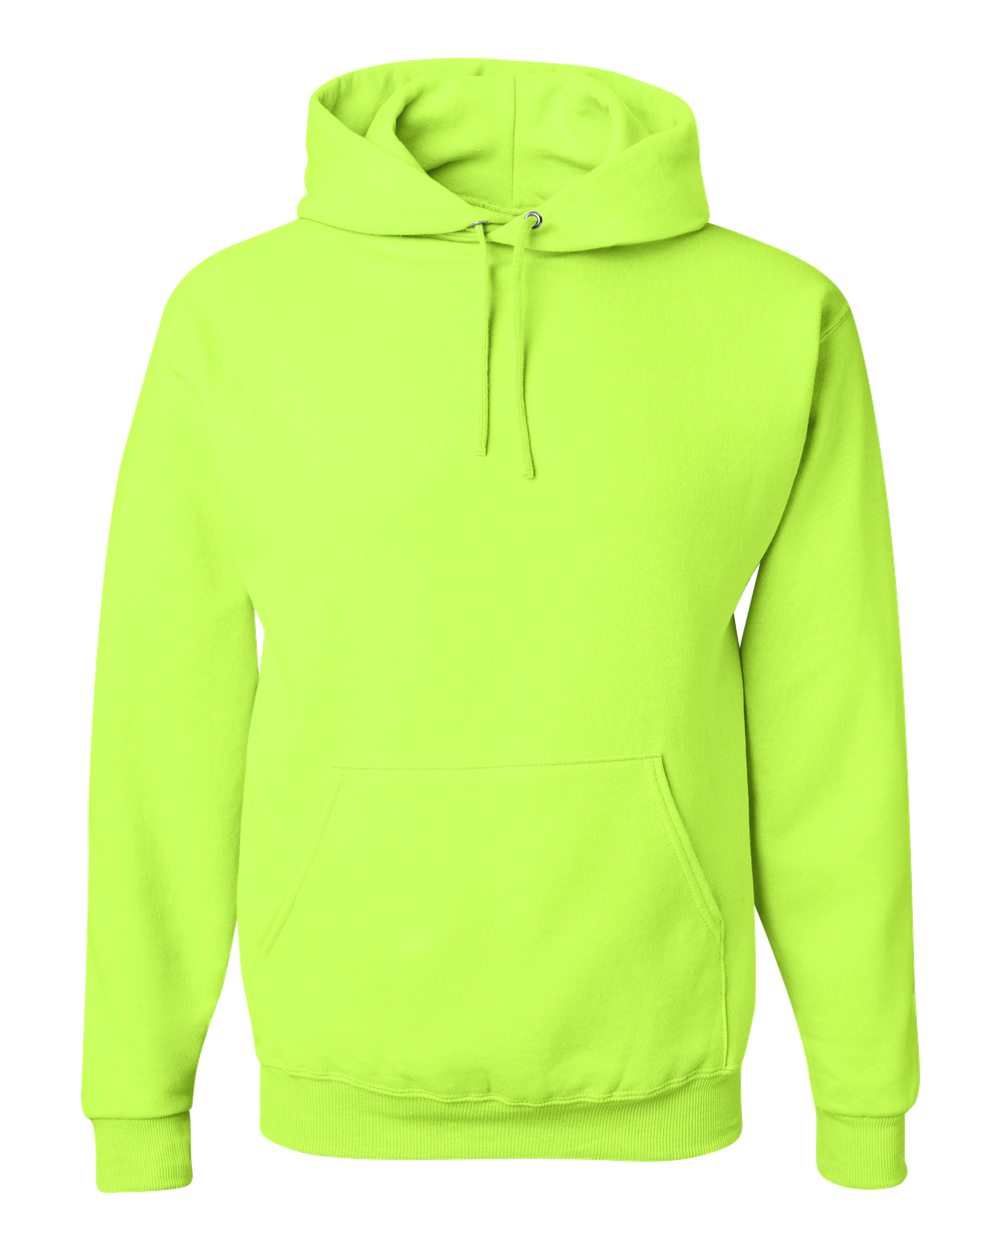 JERZEES - NuBlend® Hooded Sweatshirt - 996MR. S - 5XL